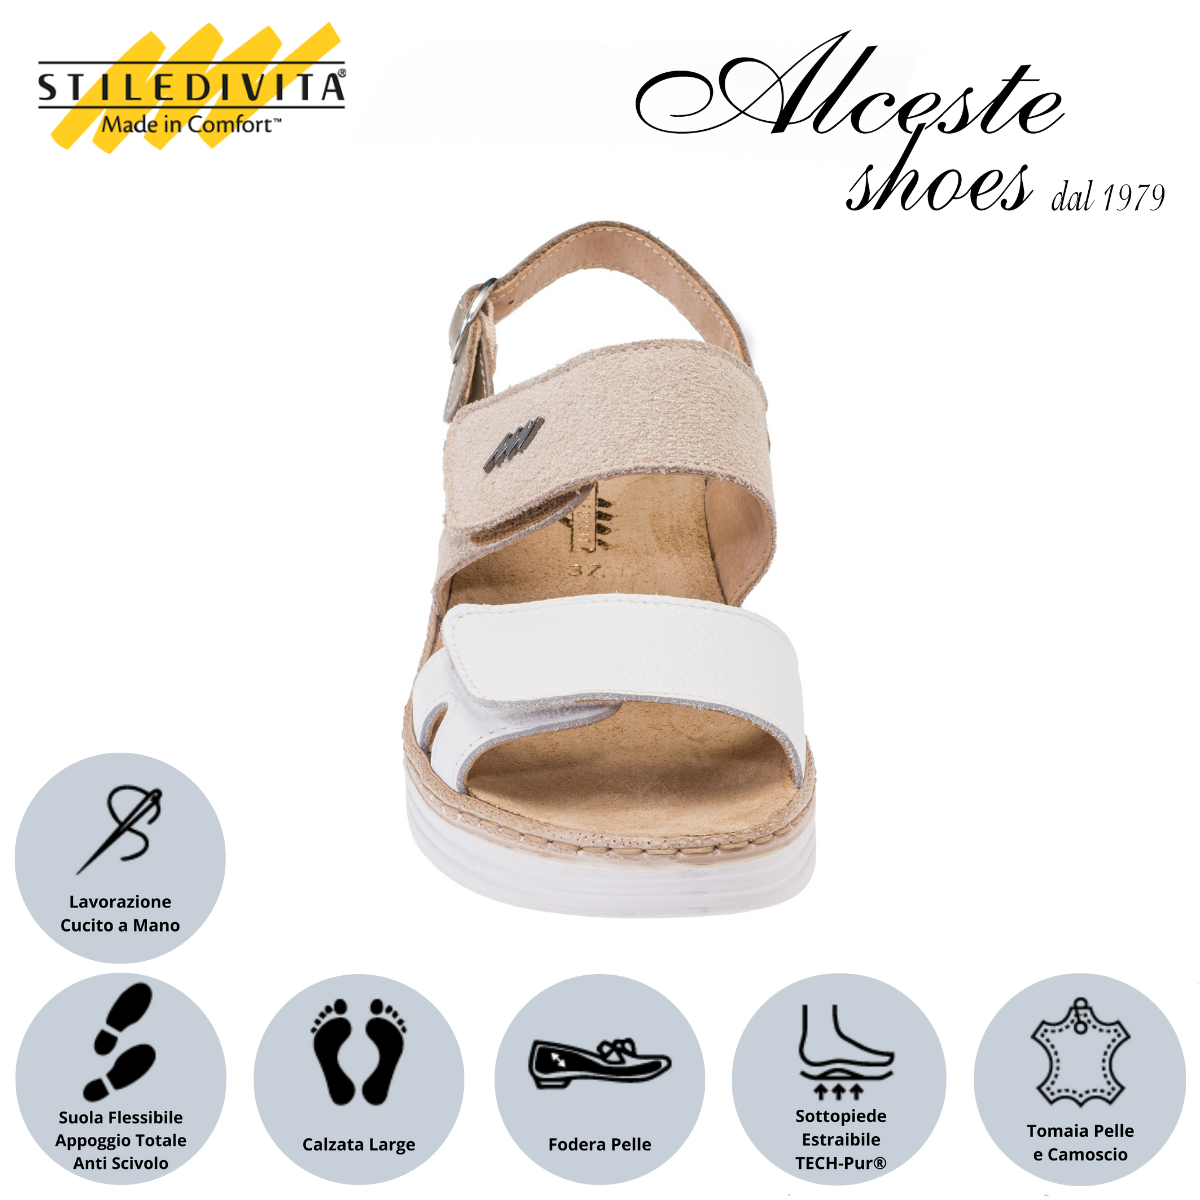 Sandalo con Strappi e Sottopiede Estraibile "Stiledivita" Art. 8242 Pelle Bianco e Camoscio Stampato Beige Alceste Shoes 44